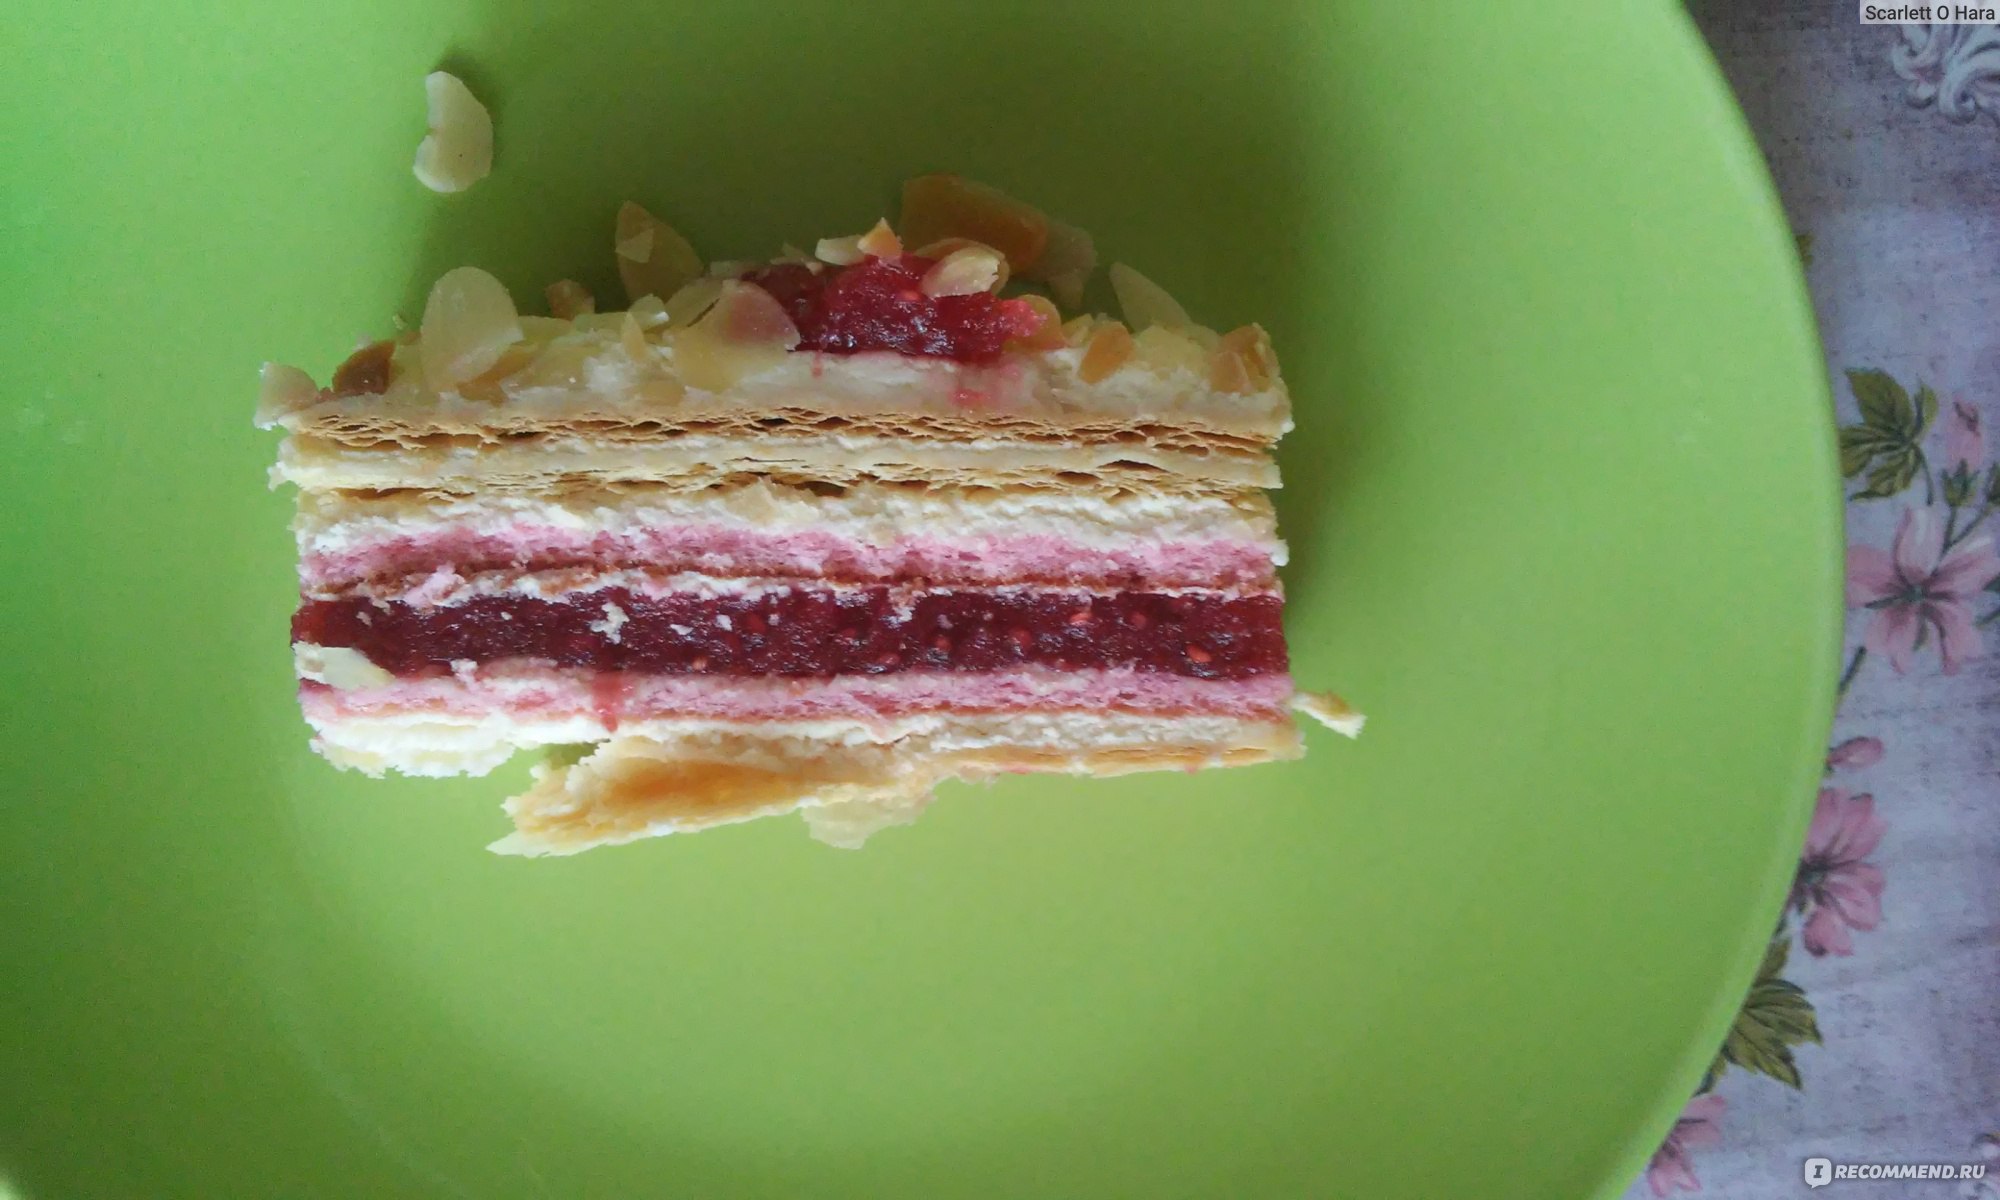 Малиновый торт от Палыча